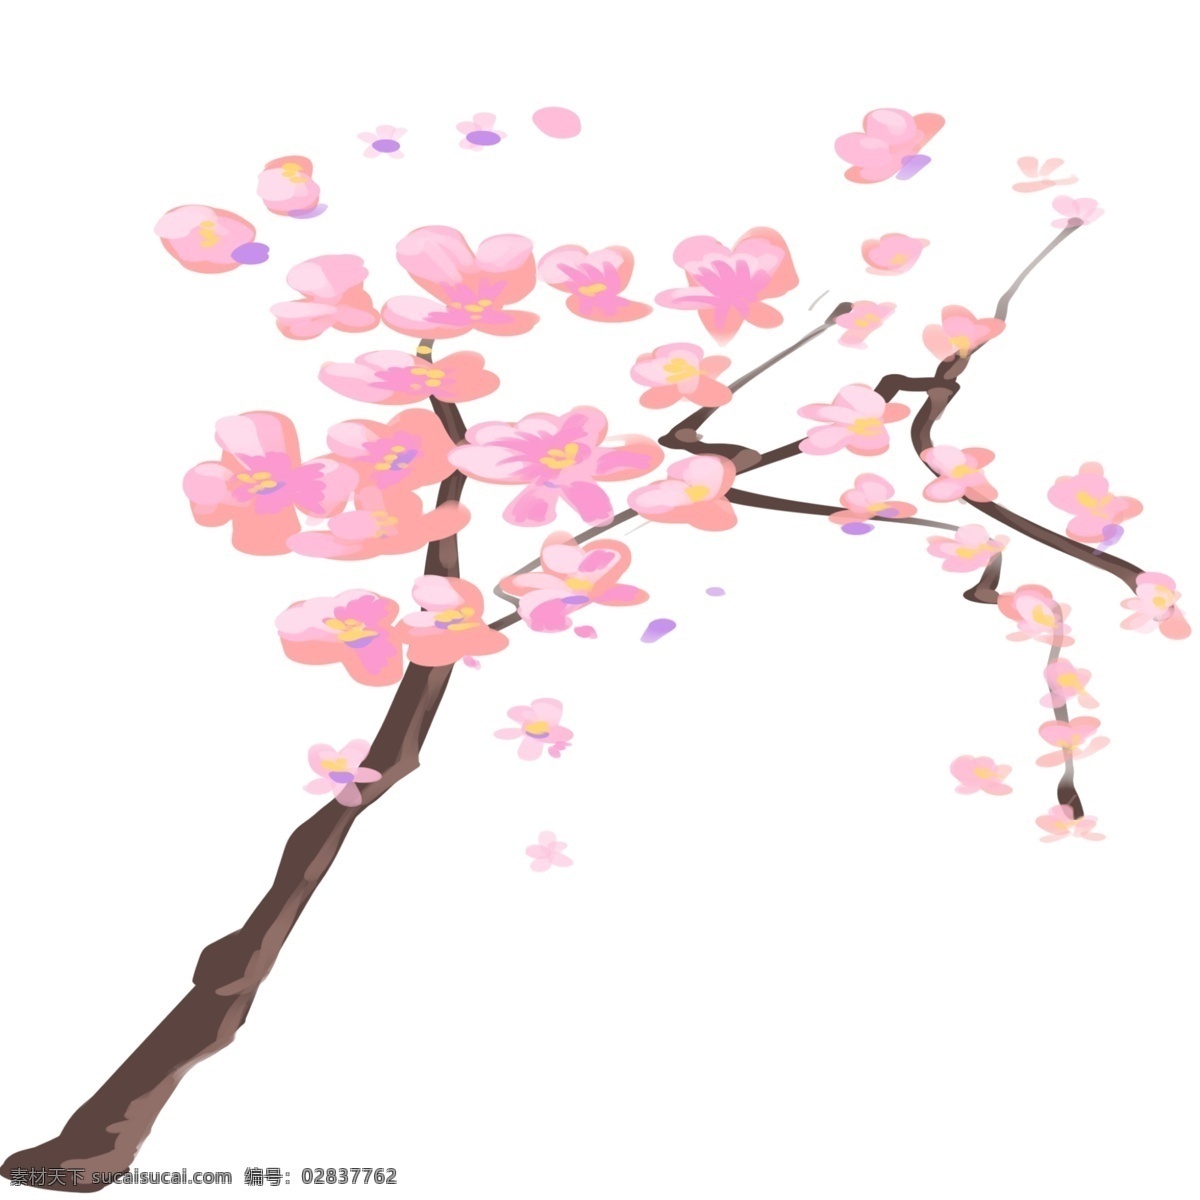 樱花树 的卡 通 插画 樱花树插画 卡通插画 植物插画 樱花插画 樱花花朵 装饰樱花 繁盛的樱花树